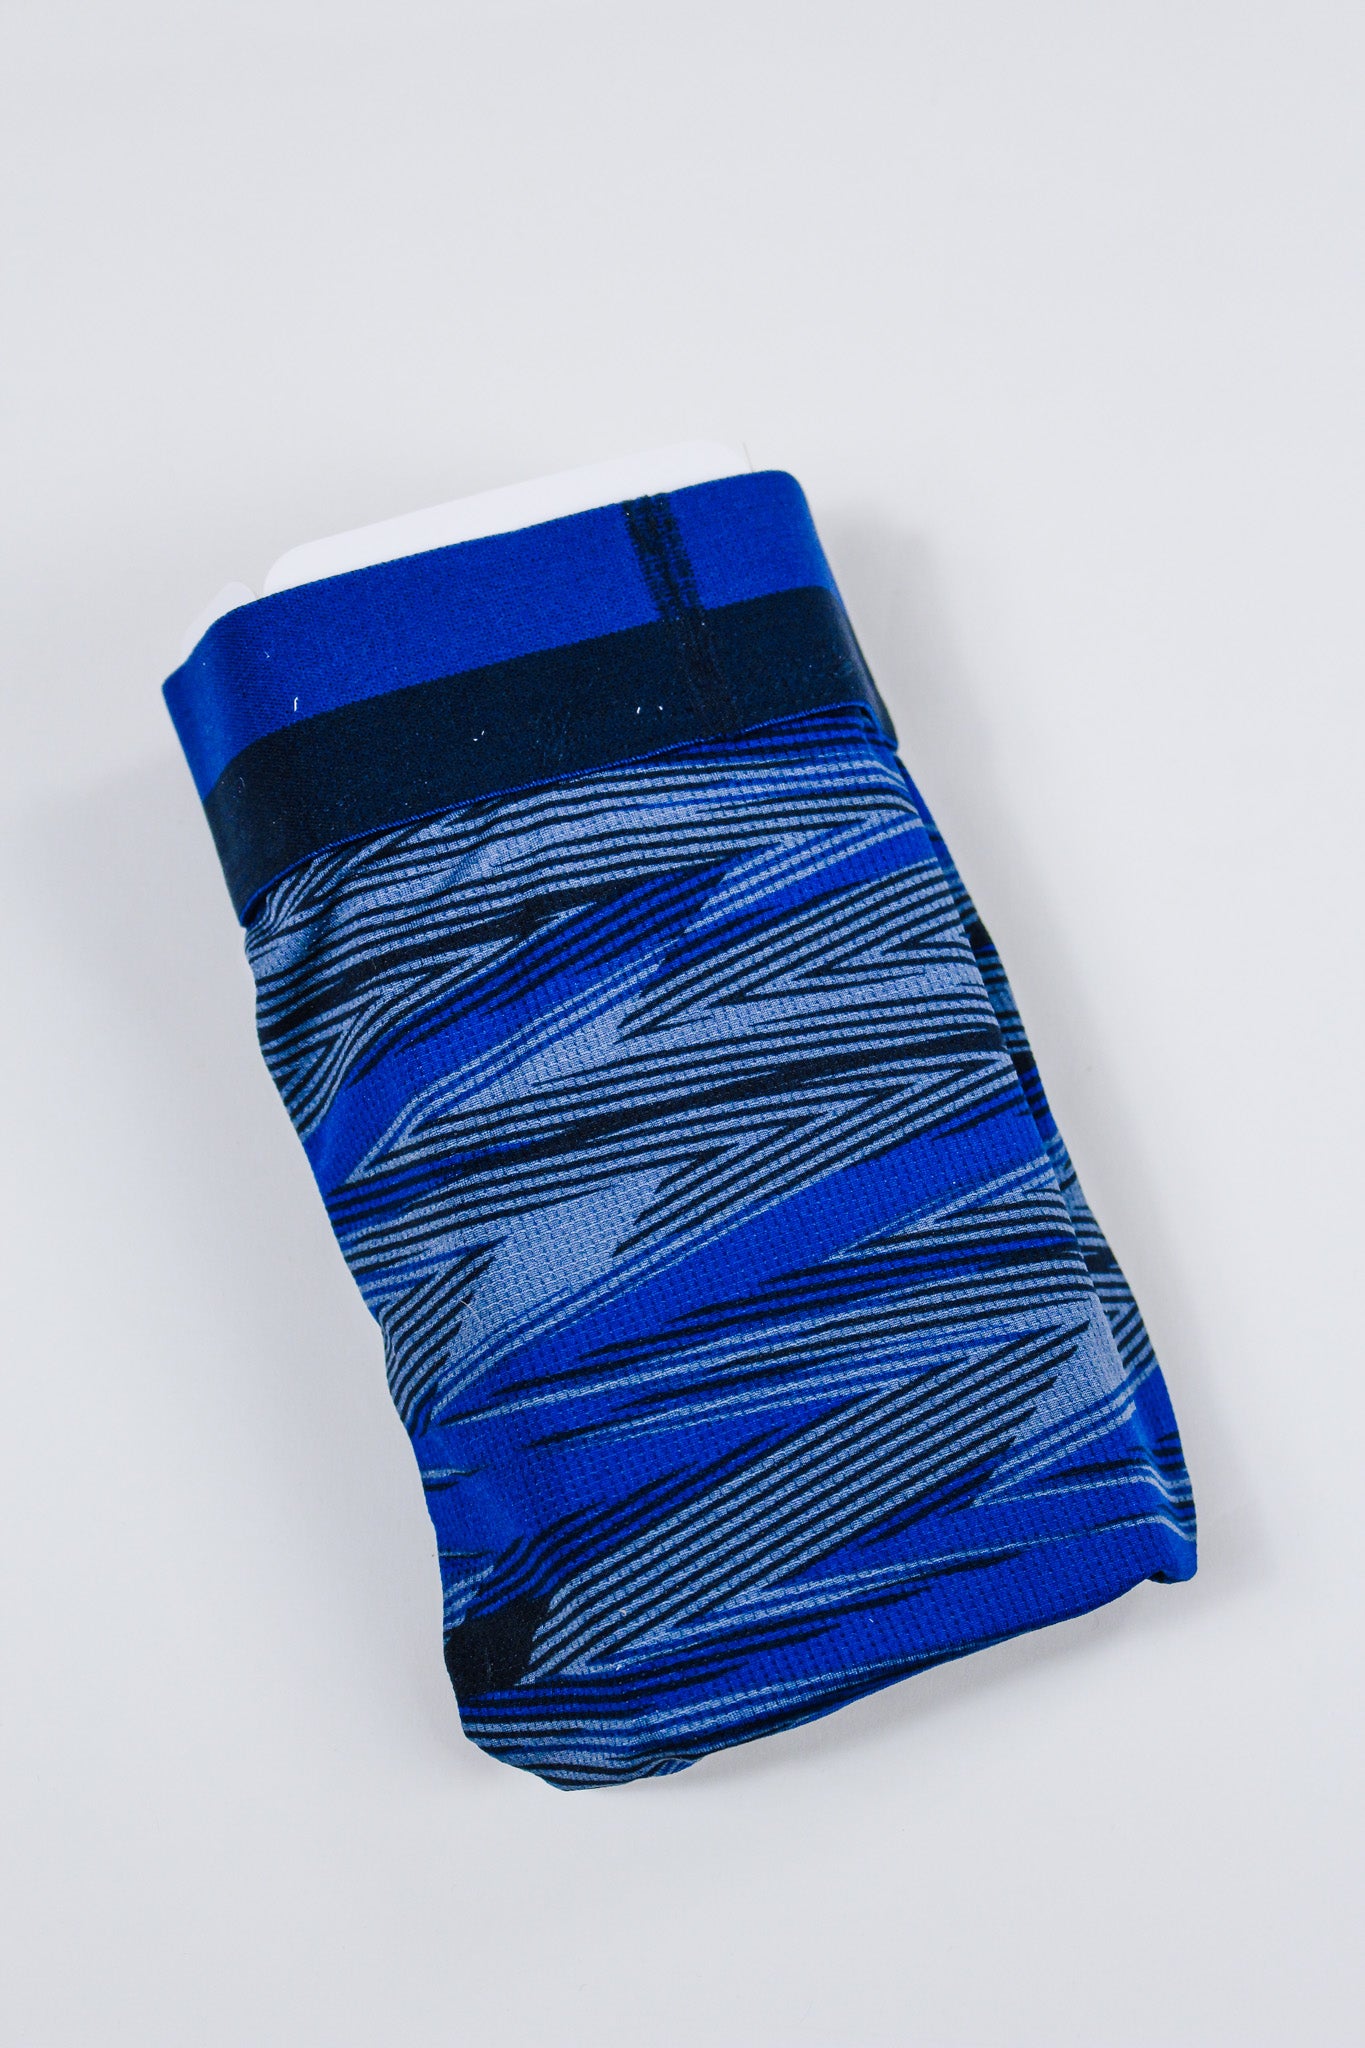 Lightning Stripe- Blue Saxx Underwear